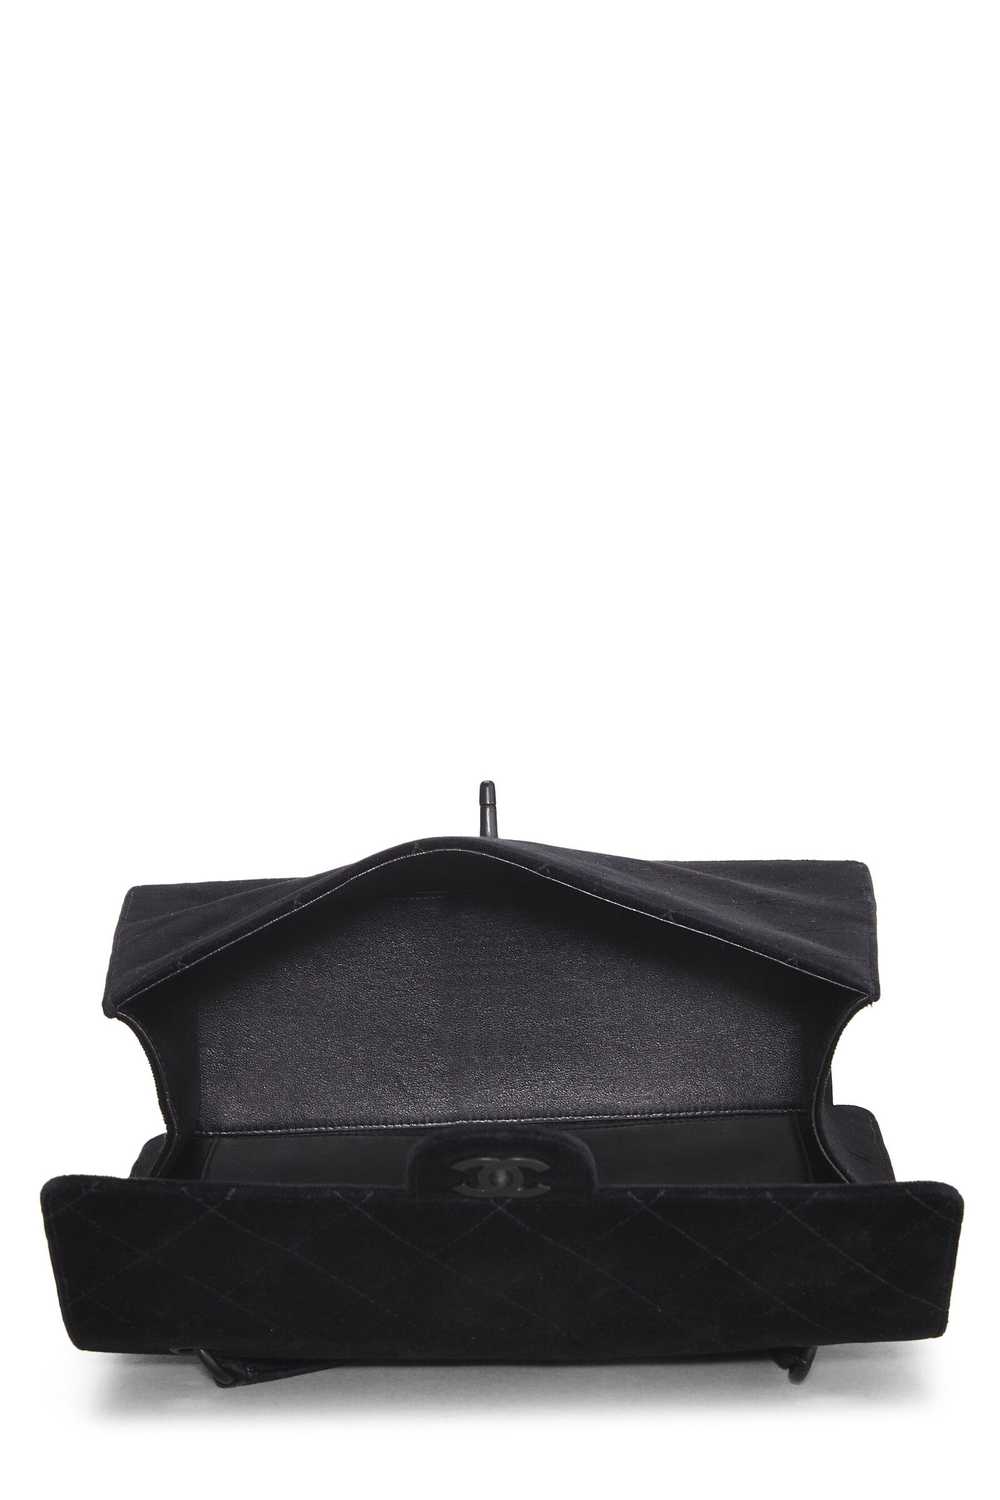 Black Velour Shoulder Bag - image 6